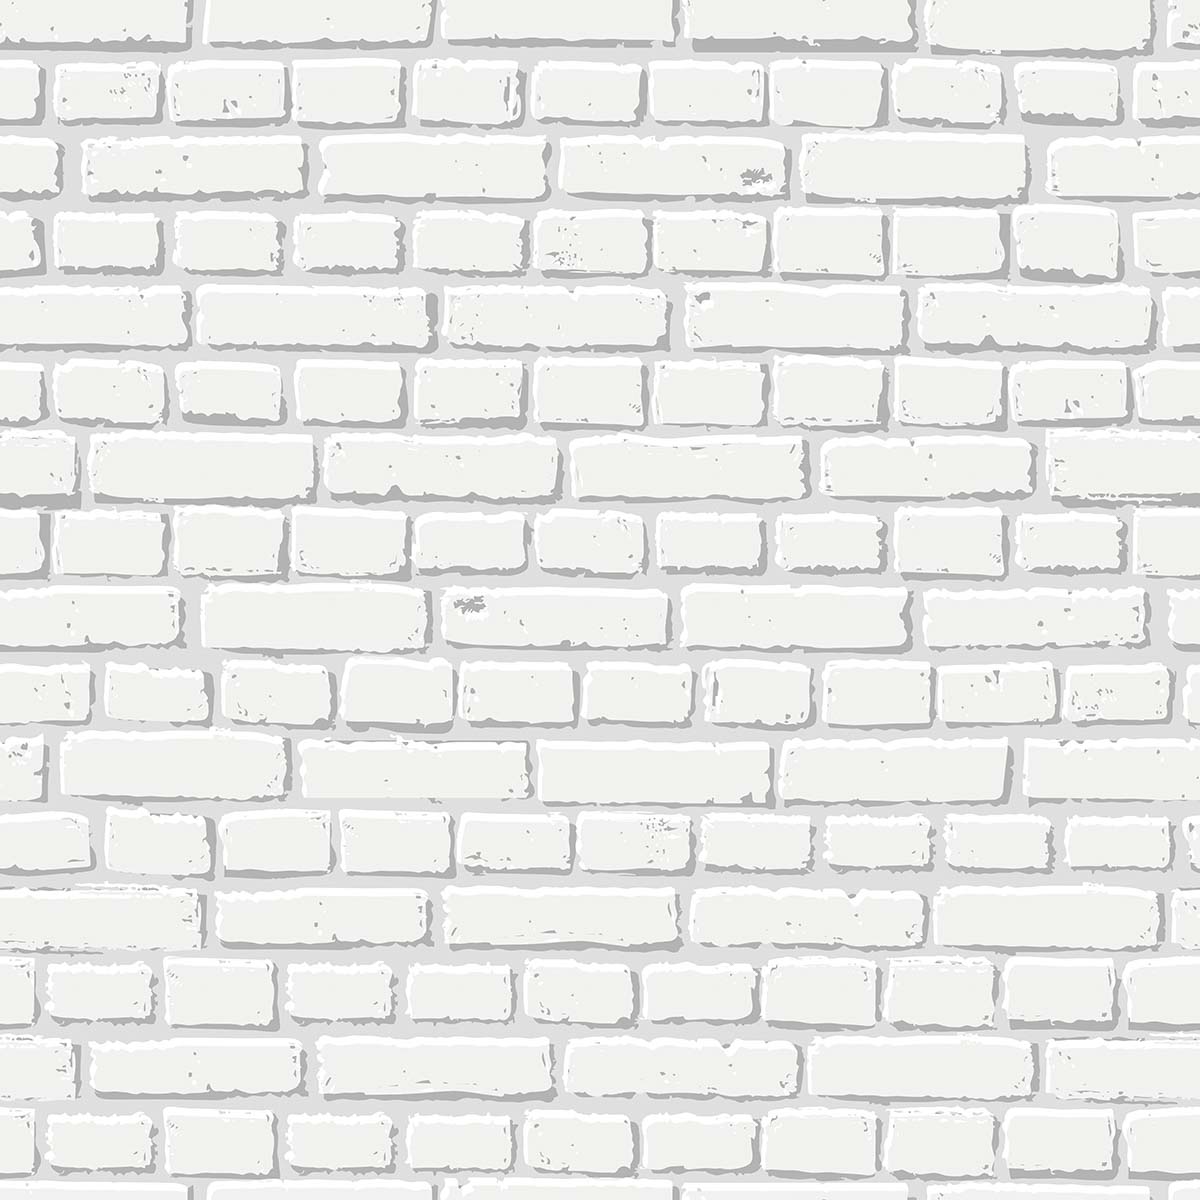 A white brick wall with many bricks